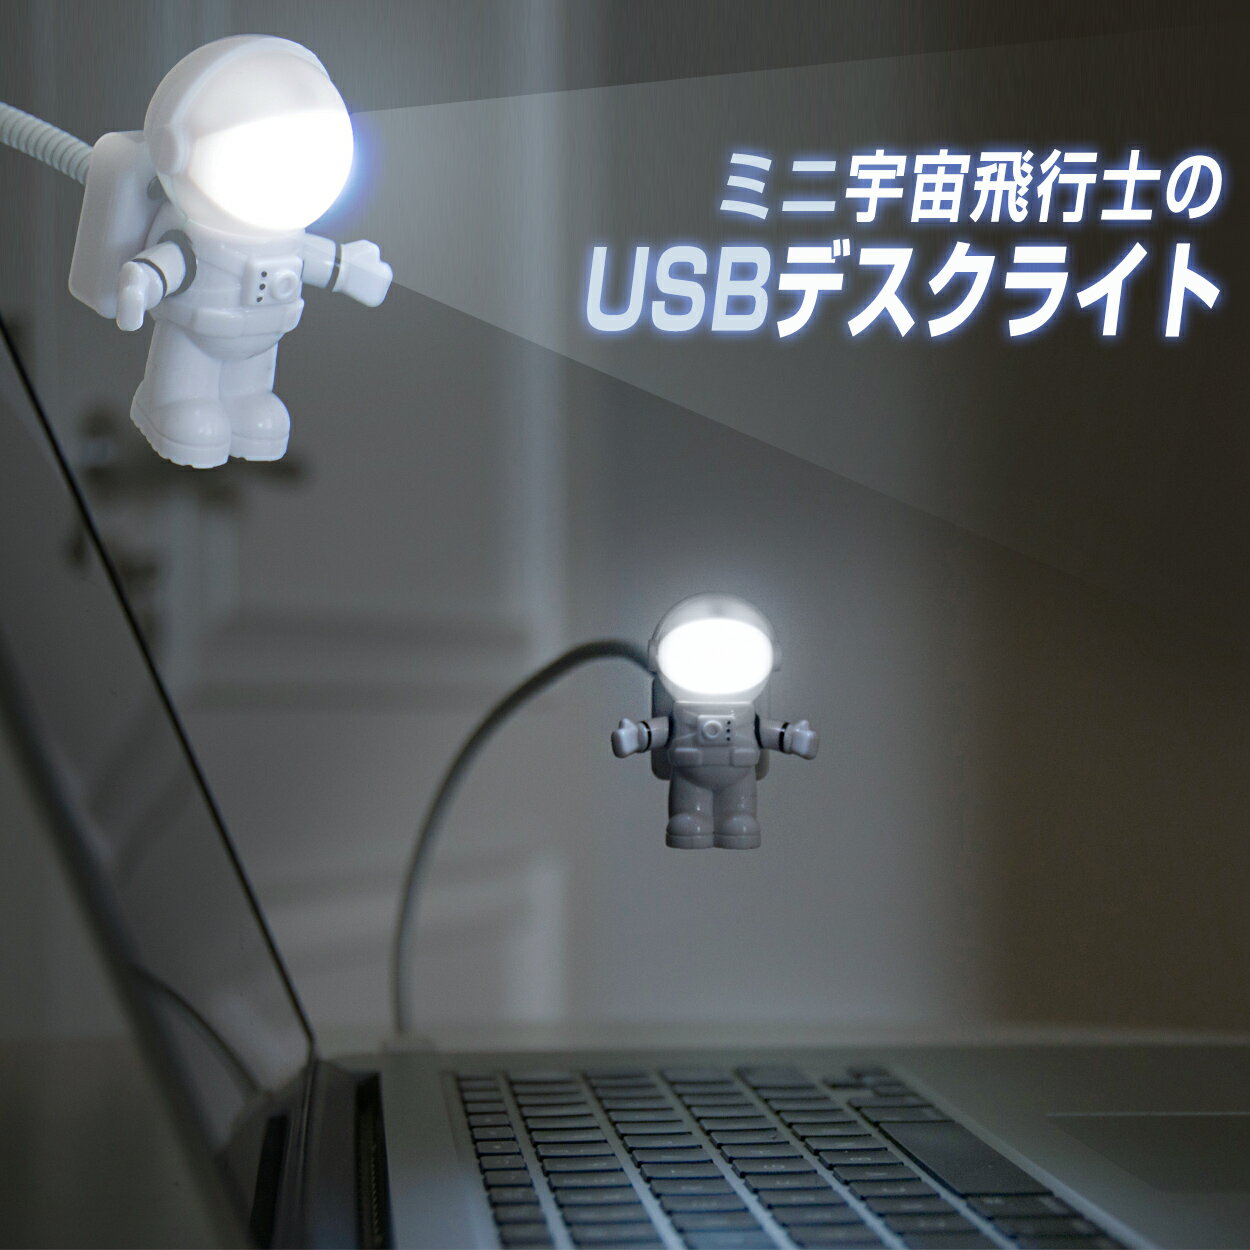 LEDライト 宇宙飛行士 アストロライト USBライト PC パソコン キーボードライト 宇宙 かわいい プレゼント インテリア 読書灯 USBコンセント 充電 照明 省エネ 角度自由調整